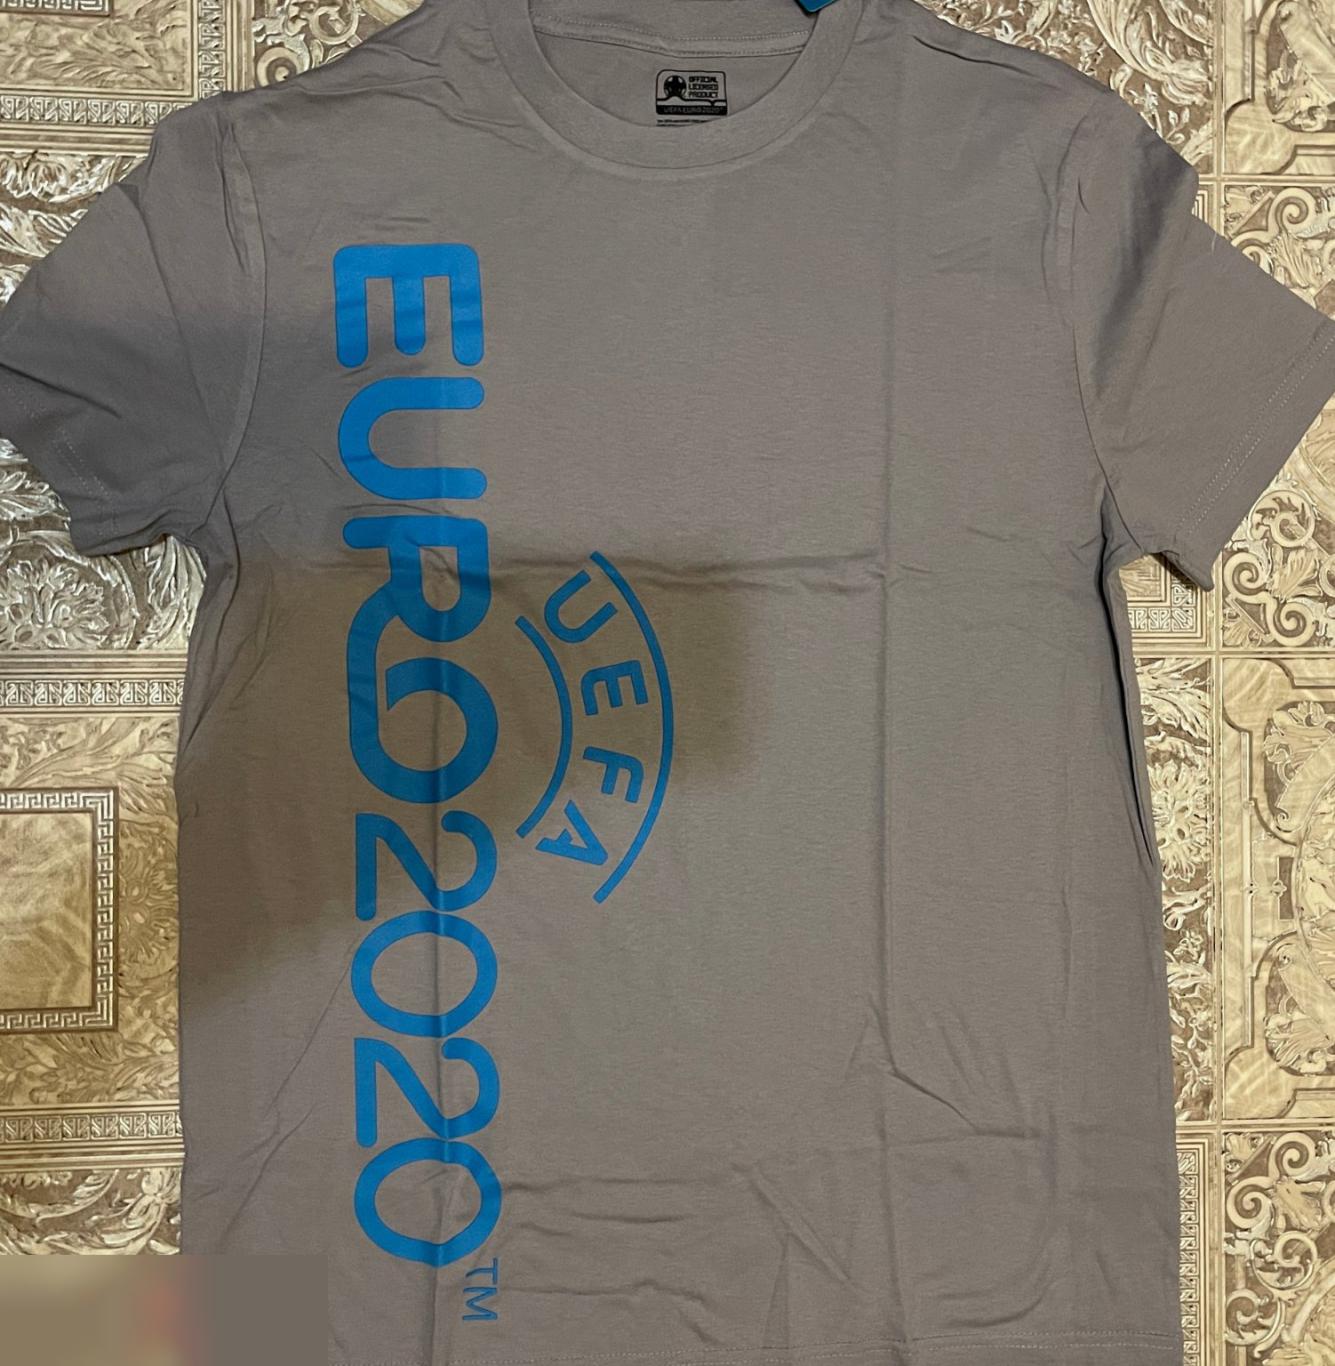 ОПТОВЫЙ ЛОТ! 100 мужских футболок ЕВРО 2020 (S, M). 6